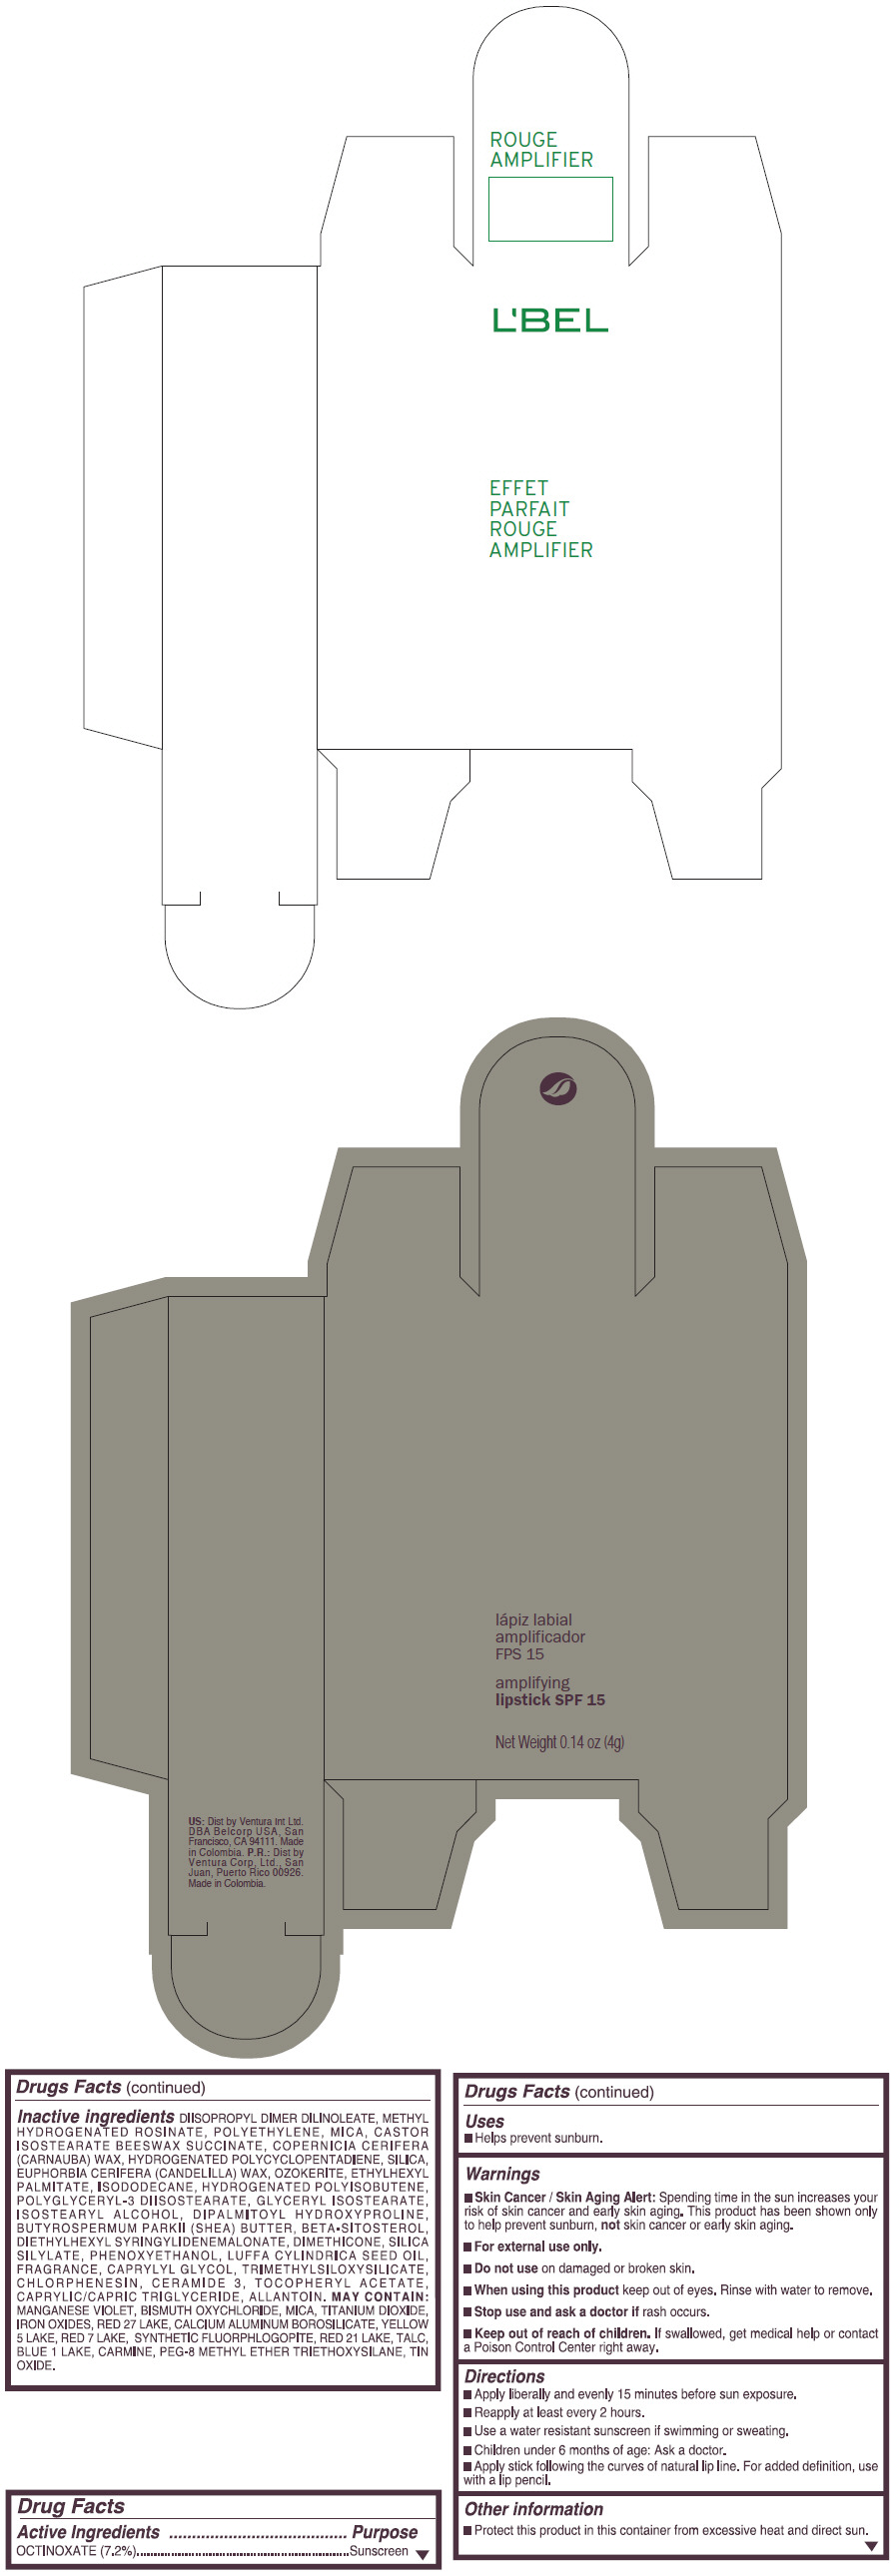 PRINCIPAL DISPLAY PANEL - 4 g Tube Box - (ROUGE GRANDIOSE) - RED